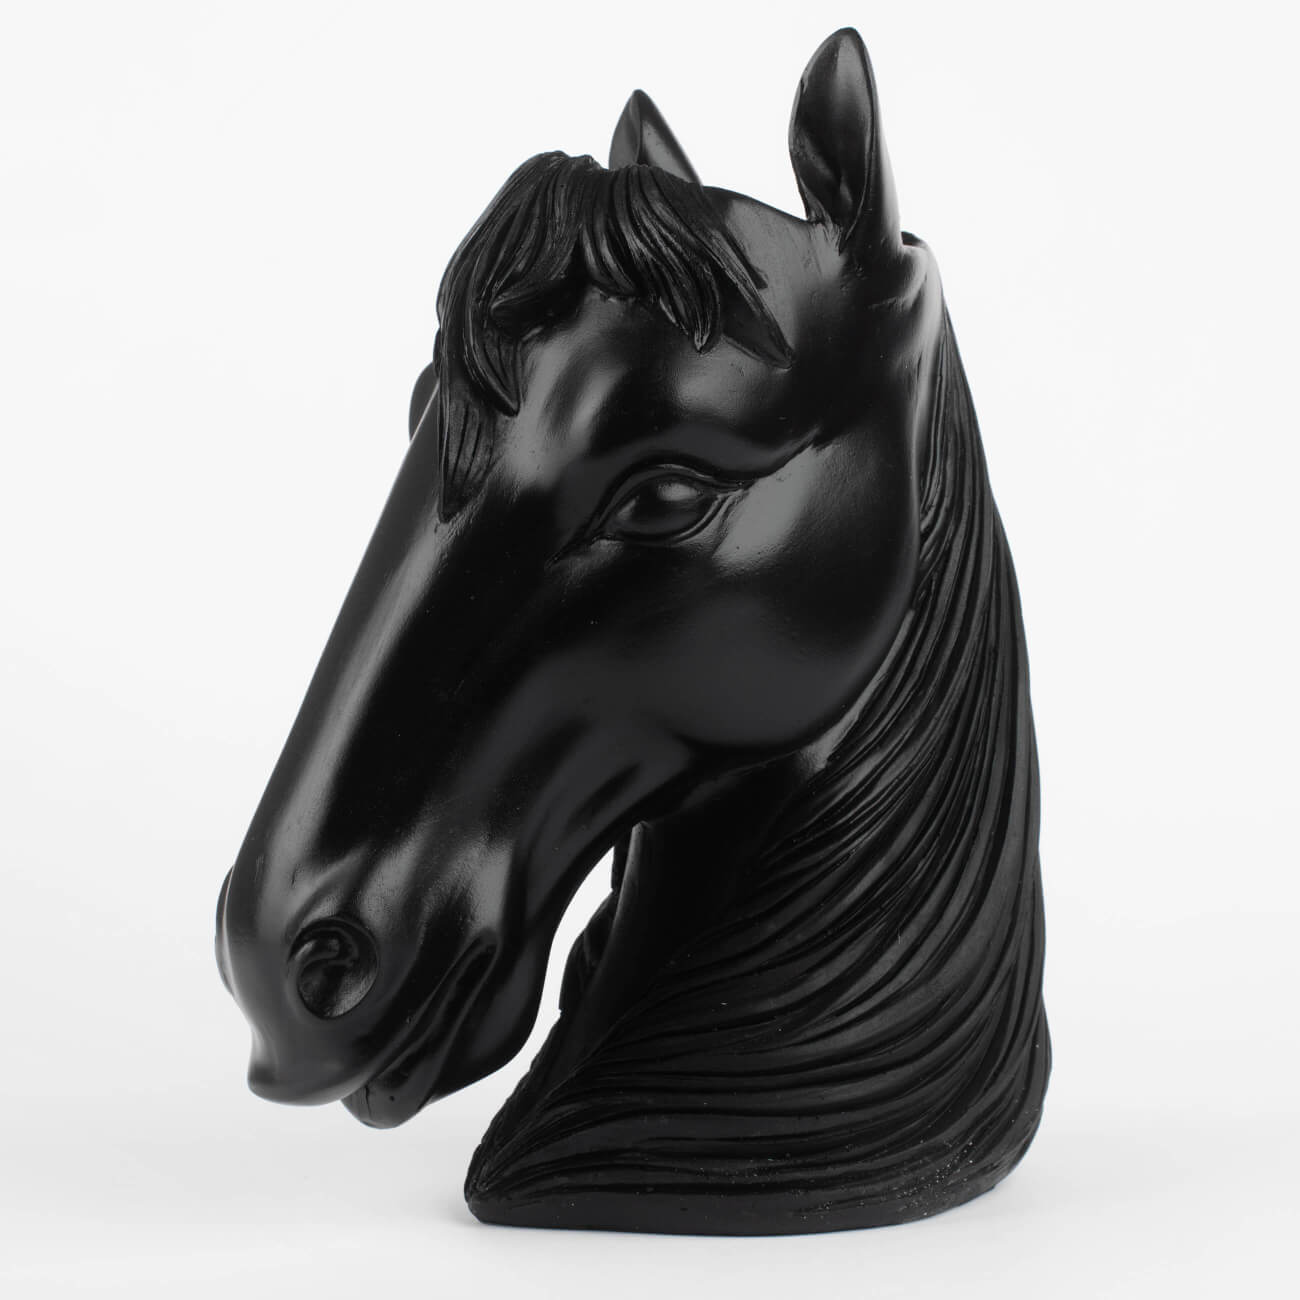 Ваза декоративная, 25 см, полирезин, черная, Голова лошади, Horse